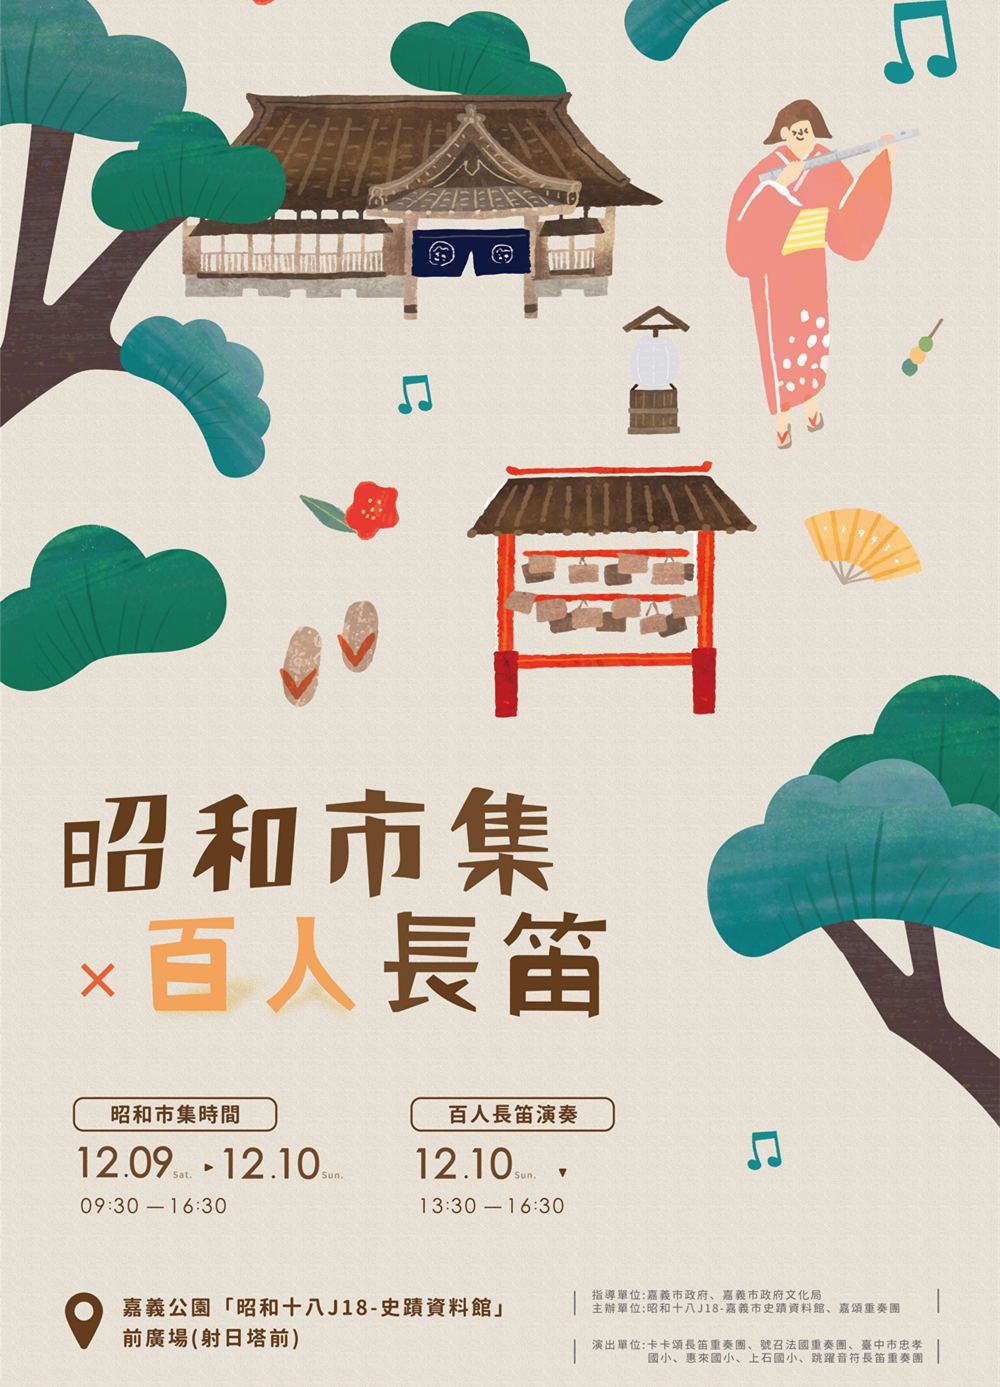 嘉市史蹟館昭和市集  享受百人長笛演奏迷人響樂 - 早安台灣新聞 | Morning Taiwan News